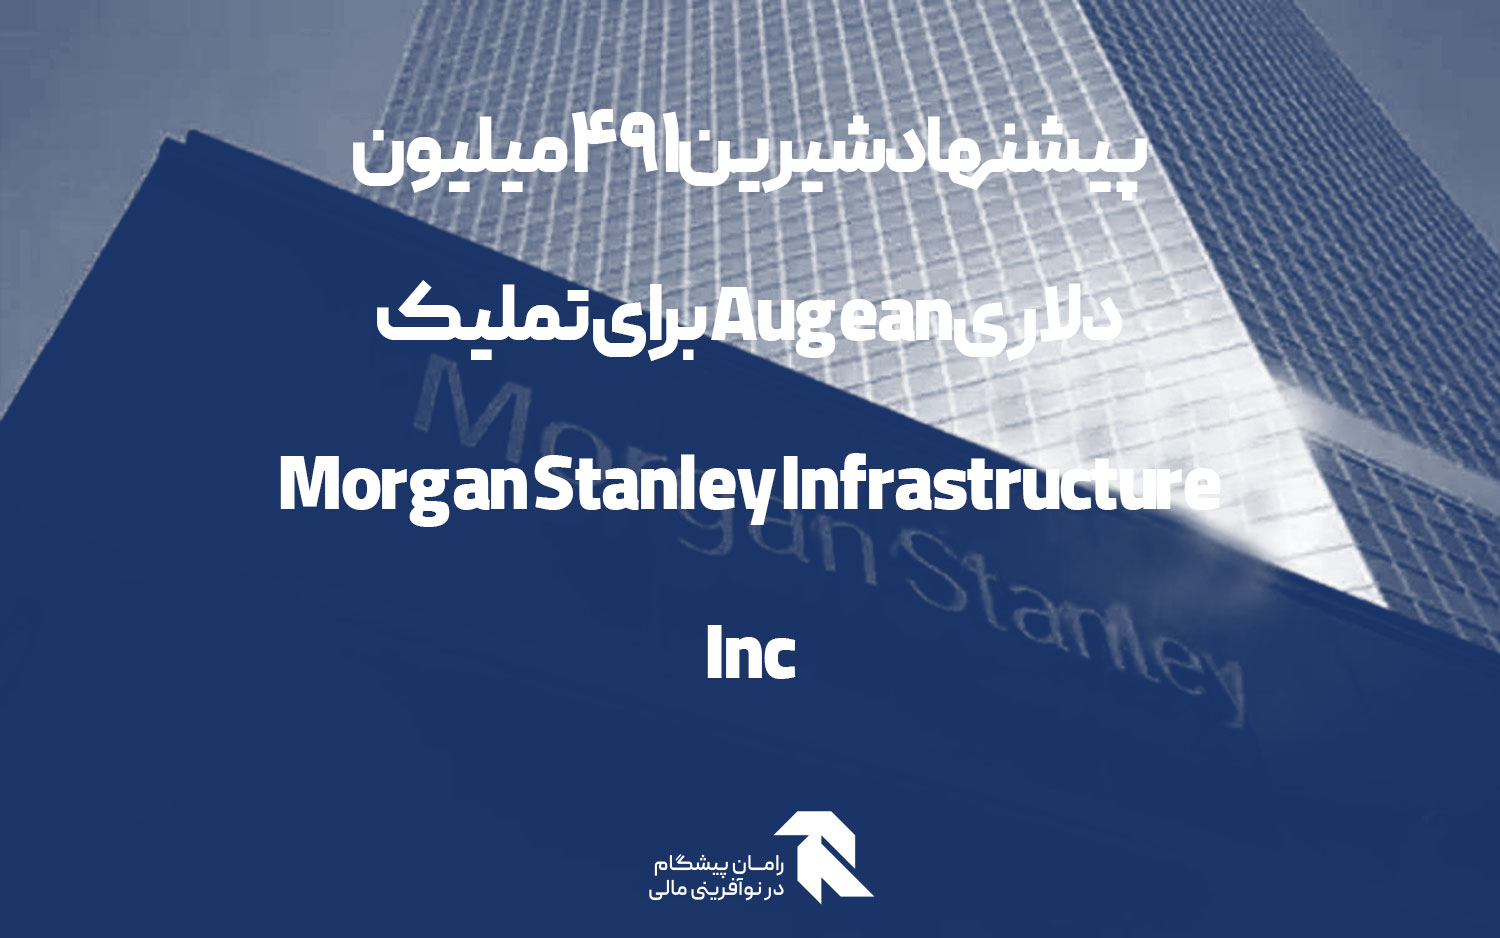 پیشنهاد شیرین 491 میلیون دلاری Augean برای تملیک Morgan Stanley Infrastructure Inc